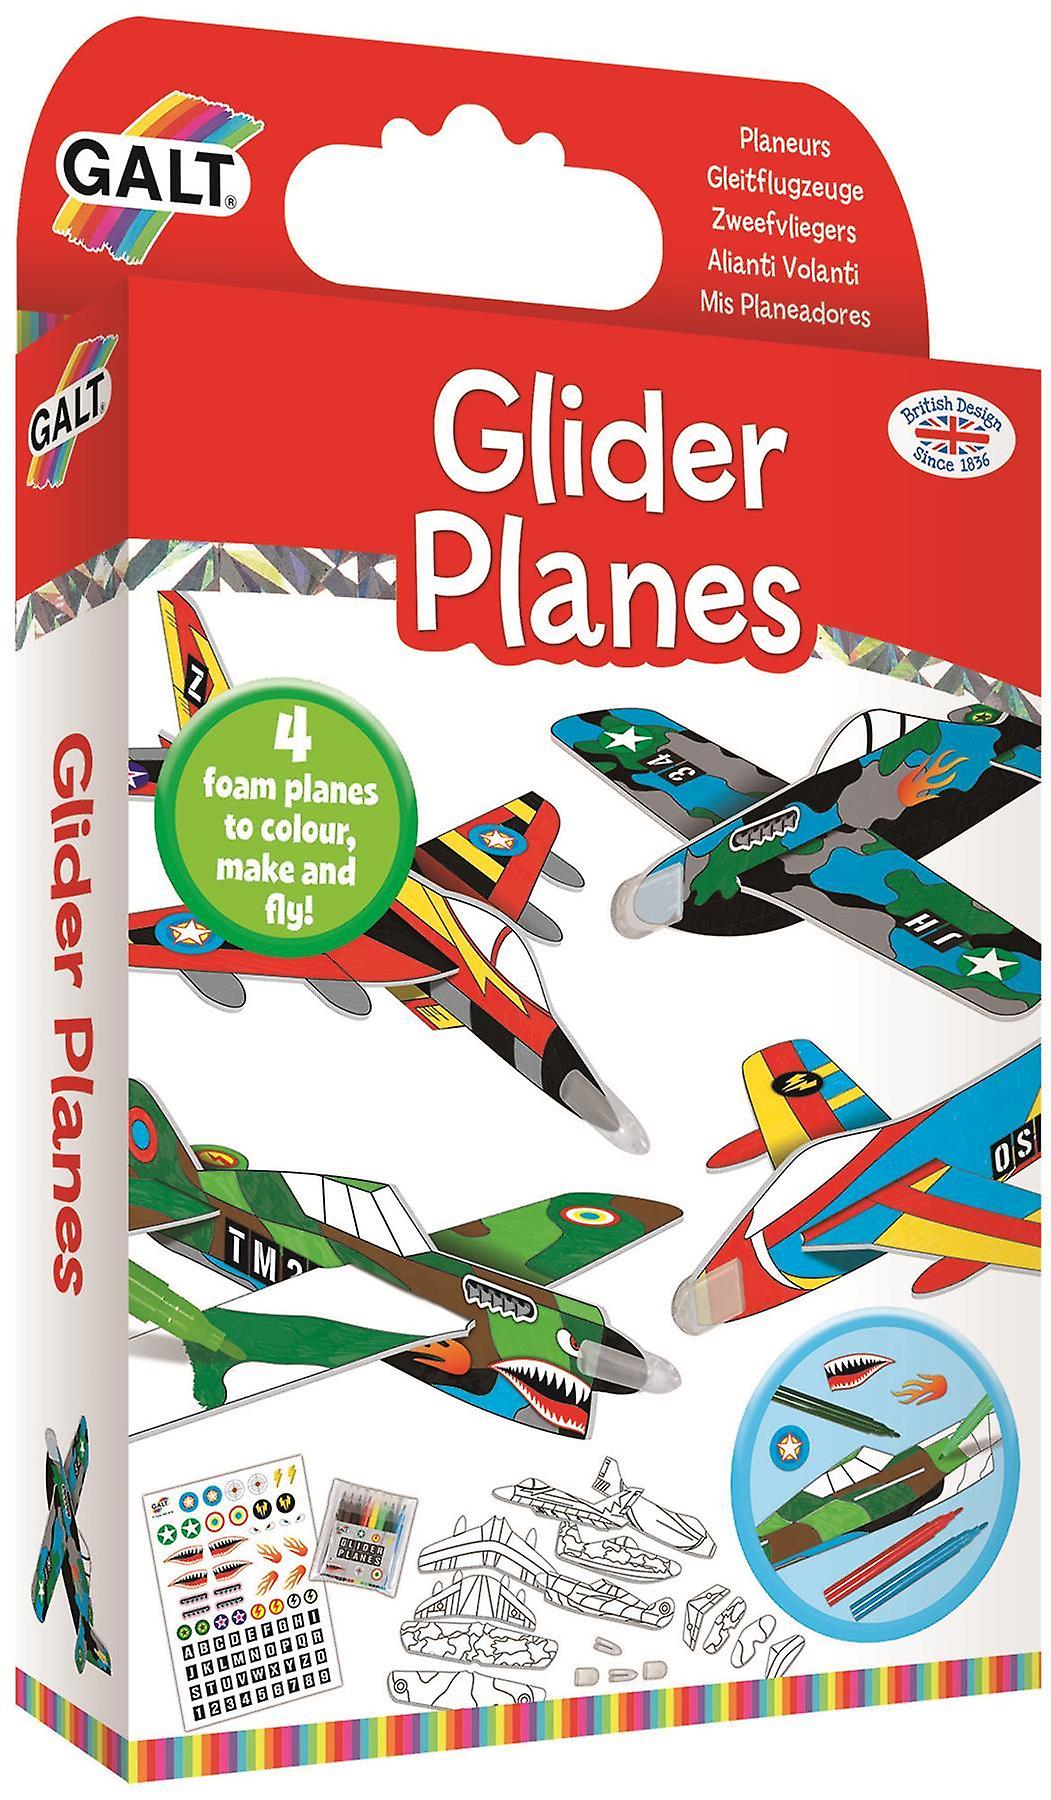 Glider planes